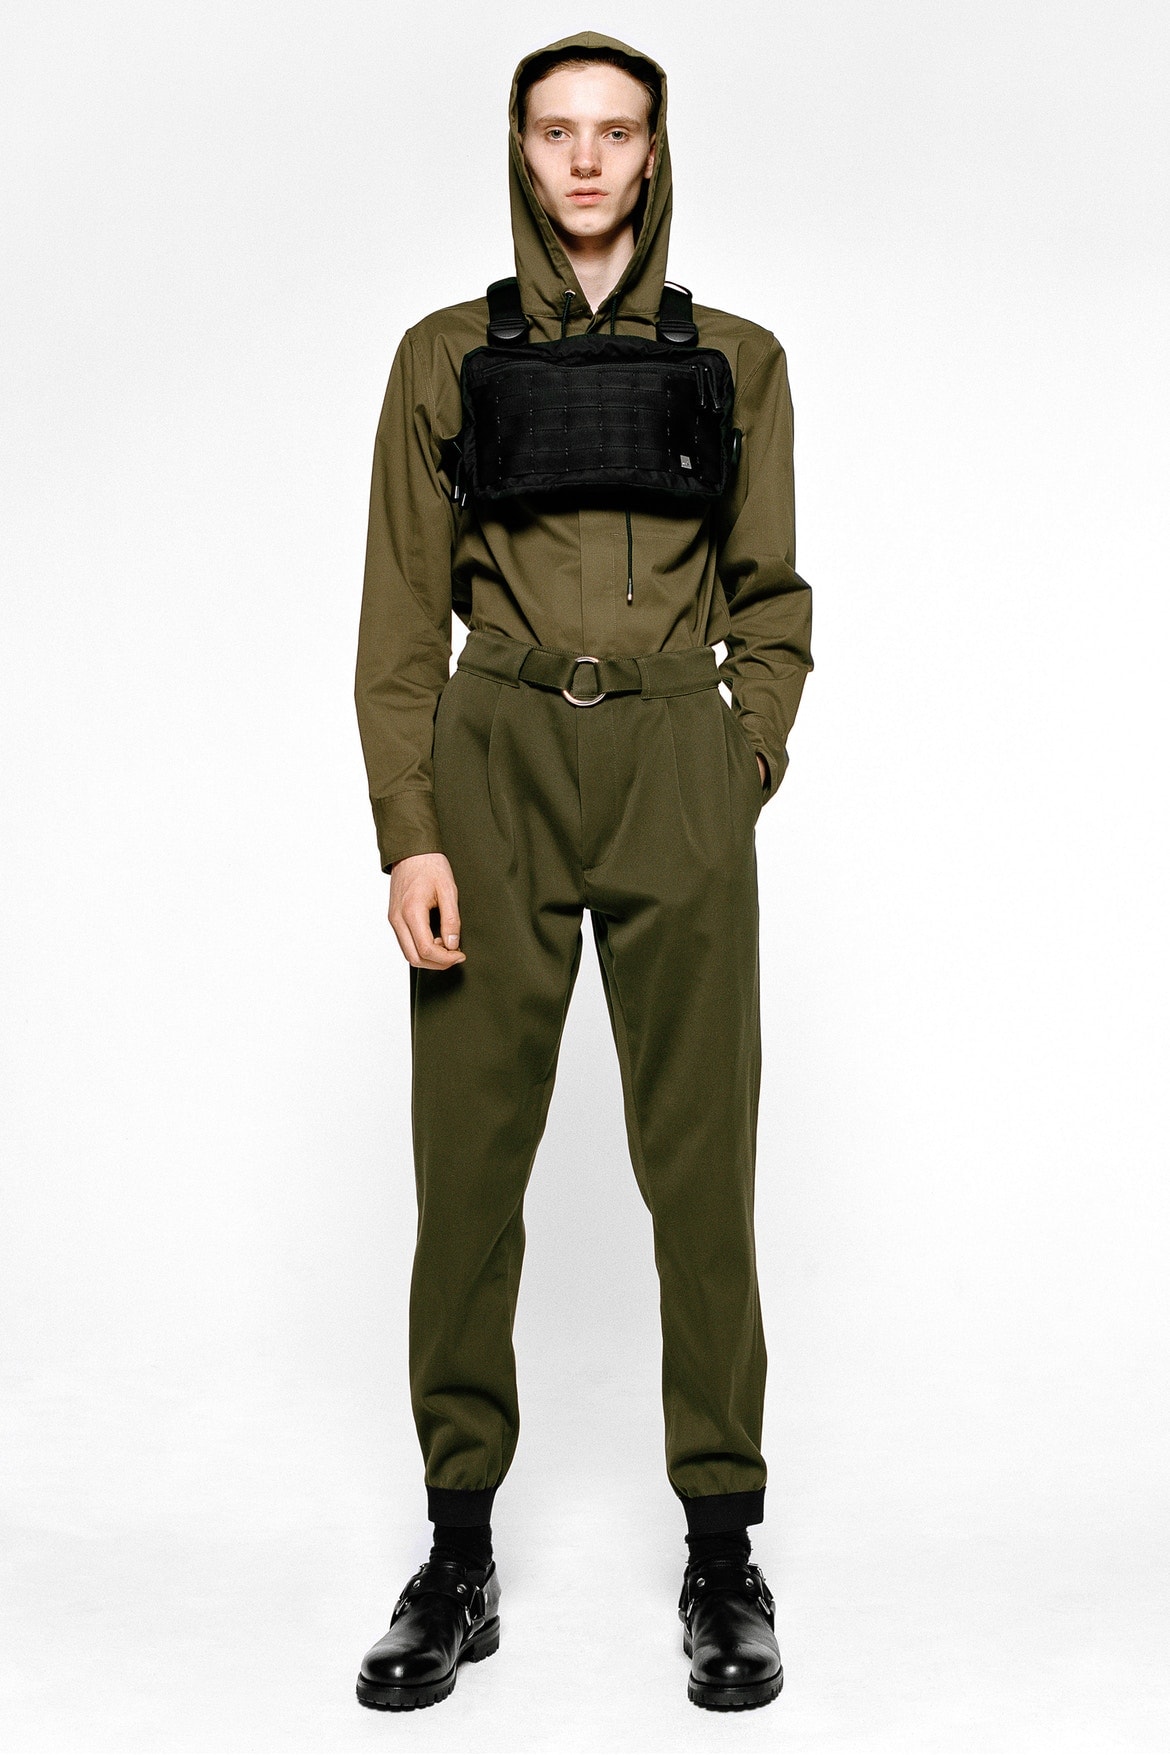 SMやミリタリーにインスパイアを受けた ALYX の初メンズコレクションがデビュー S&M military inspired mens collection debut